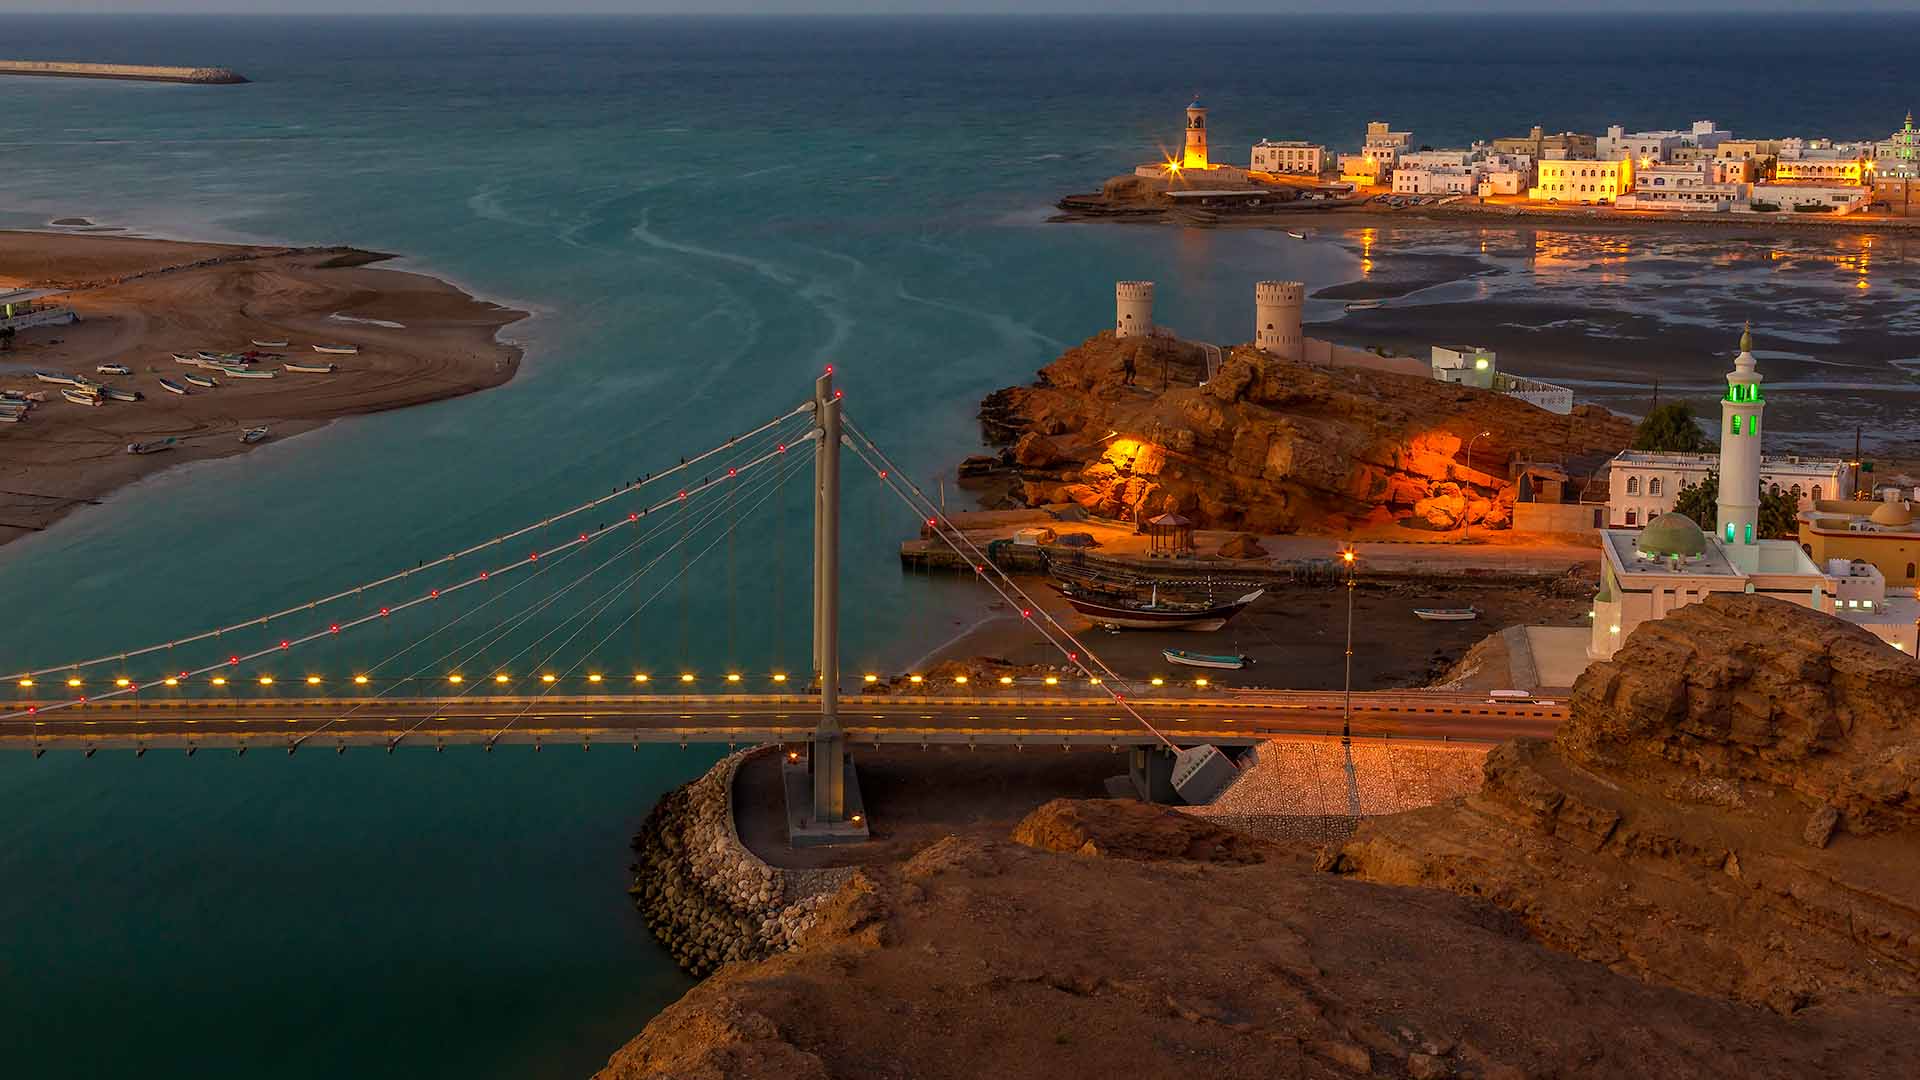 Port city of Sur, Oman